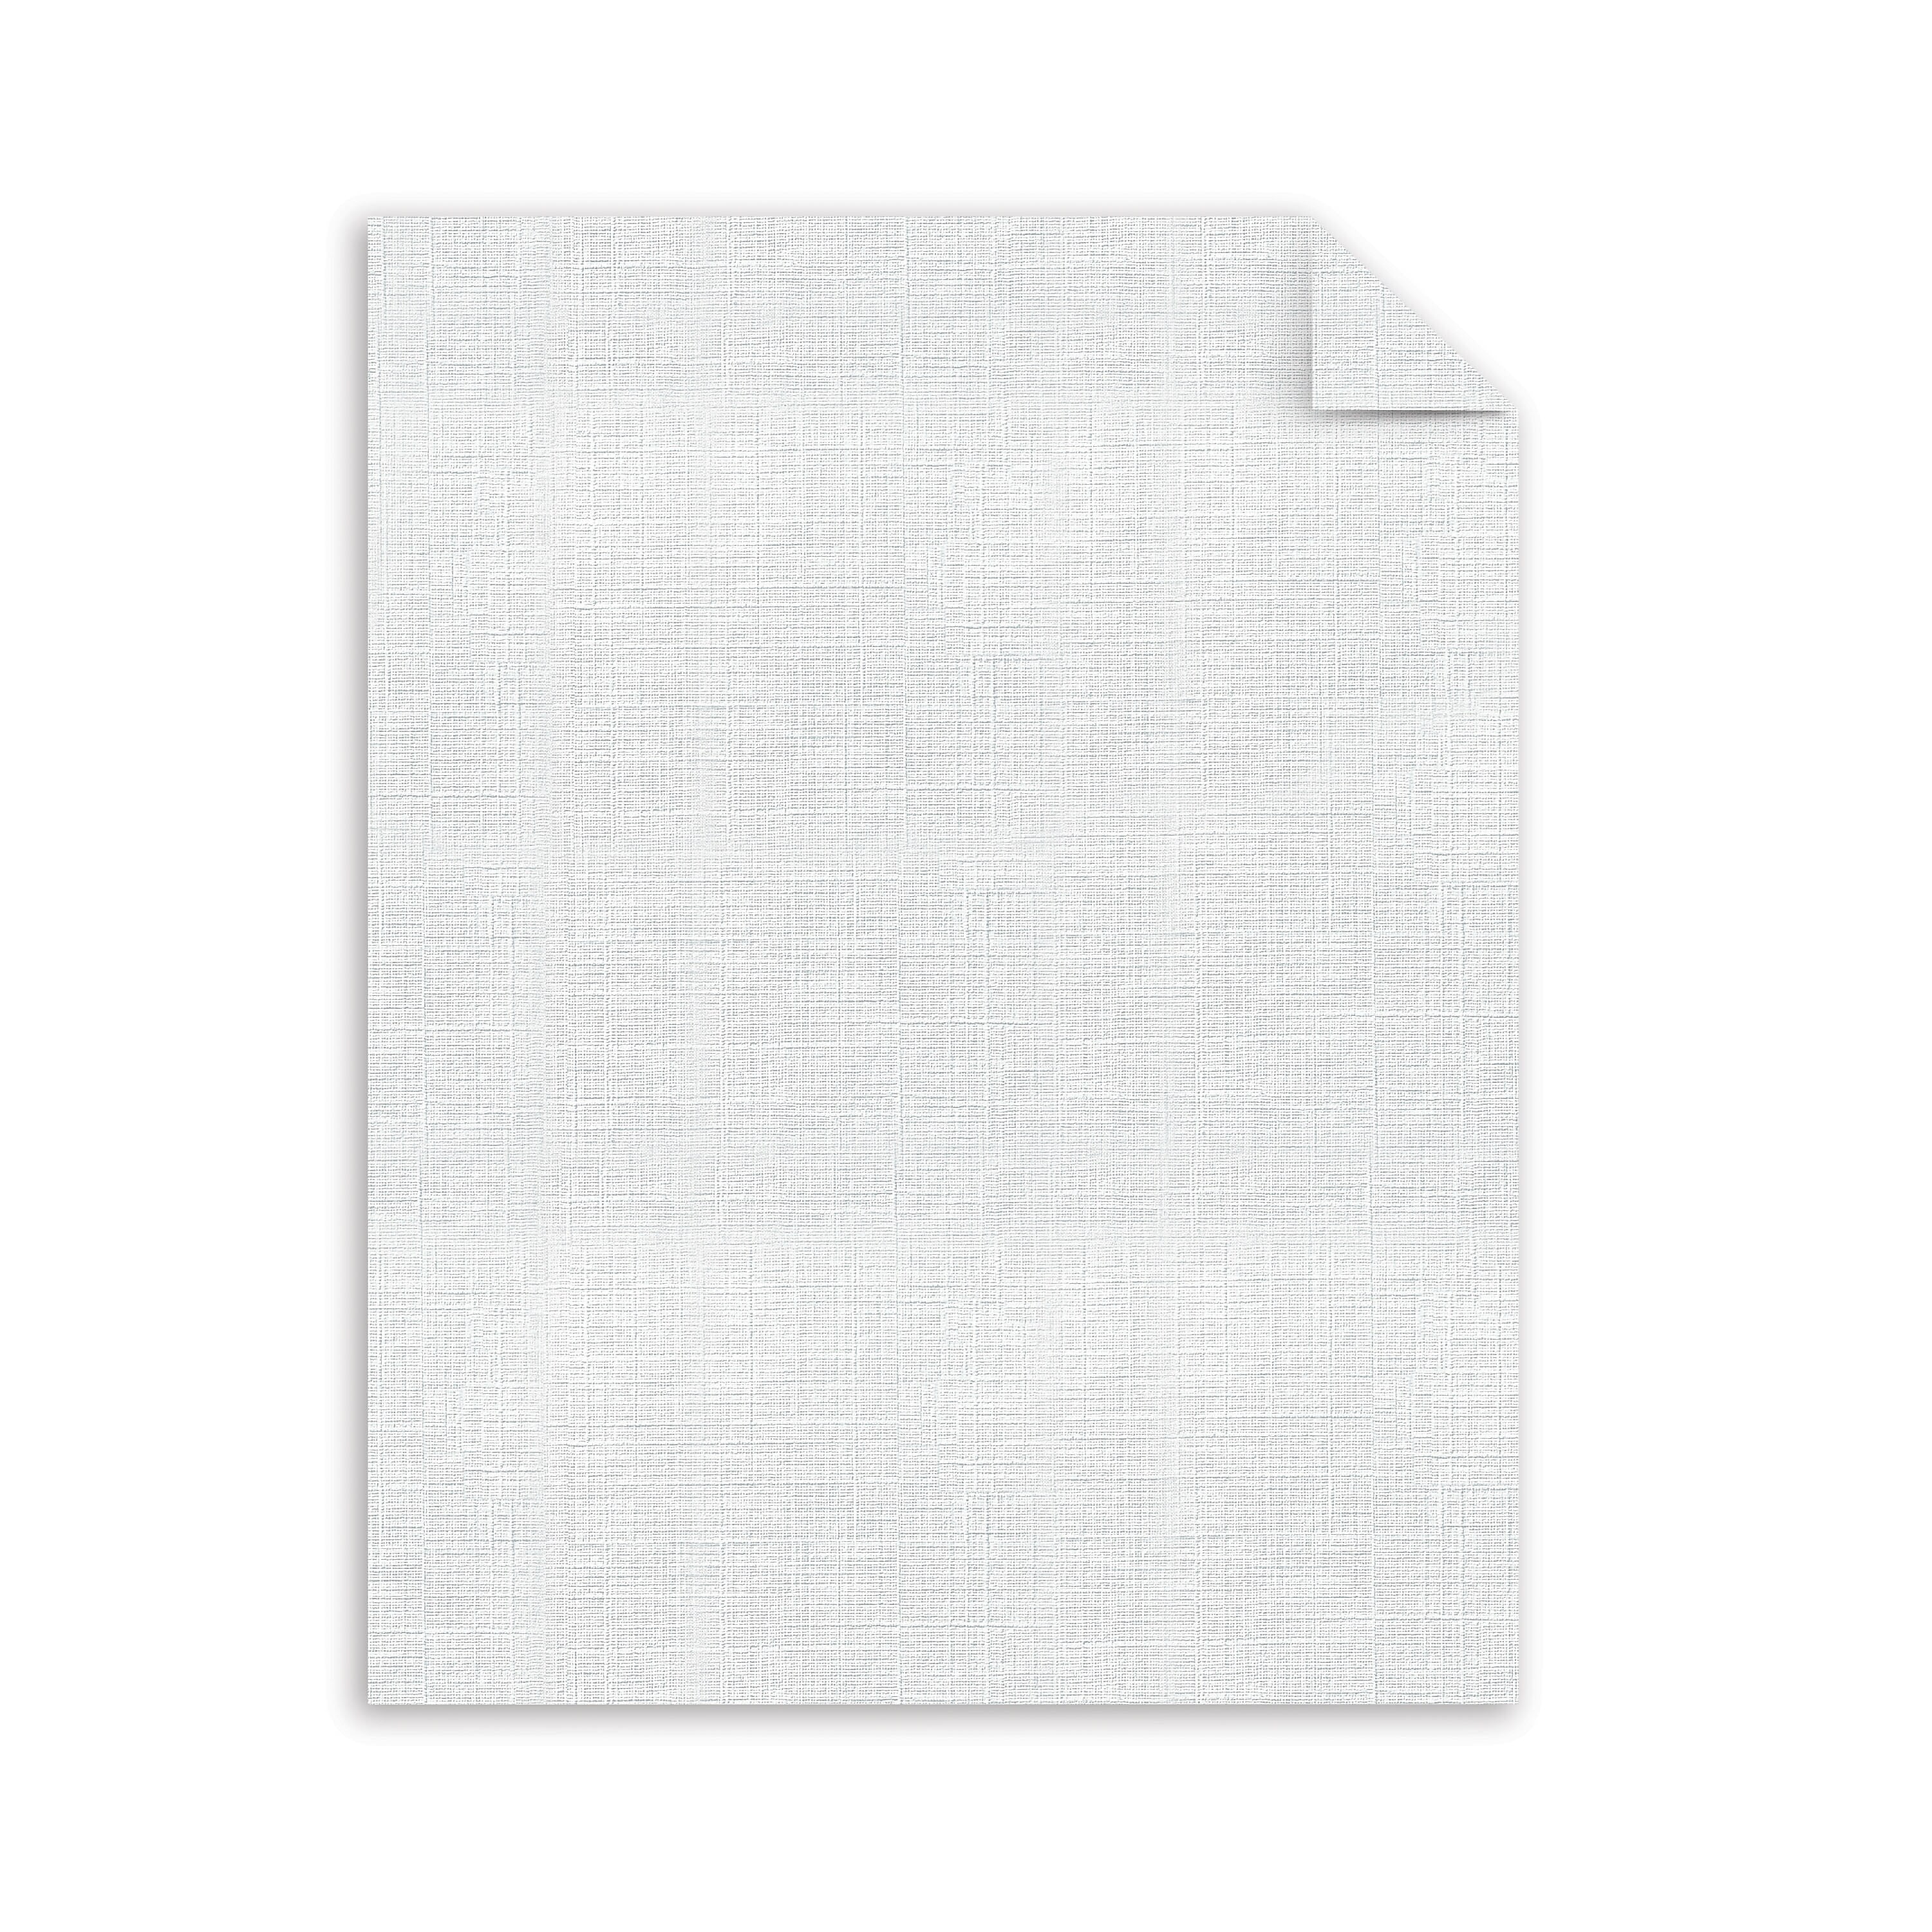 White Paper - 8 1/2 x 11 in 32 lb Bond Wove 100% Cotton